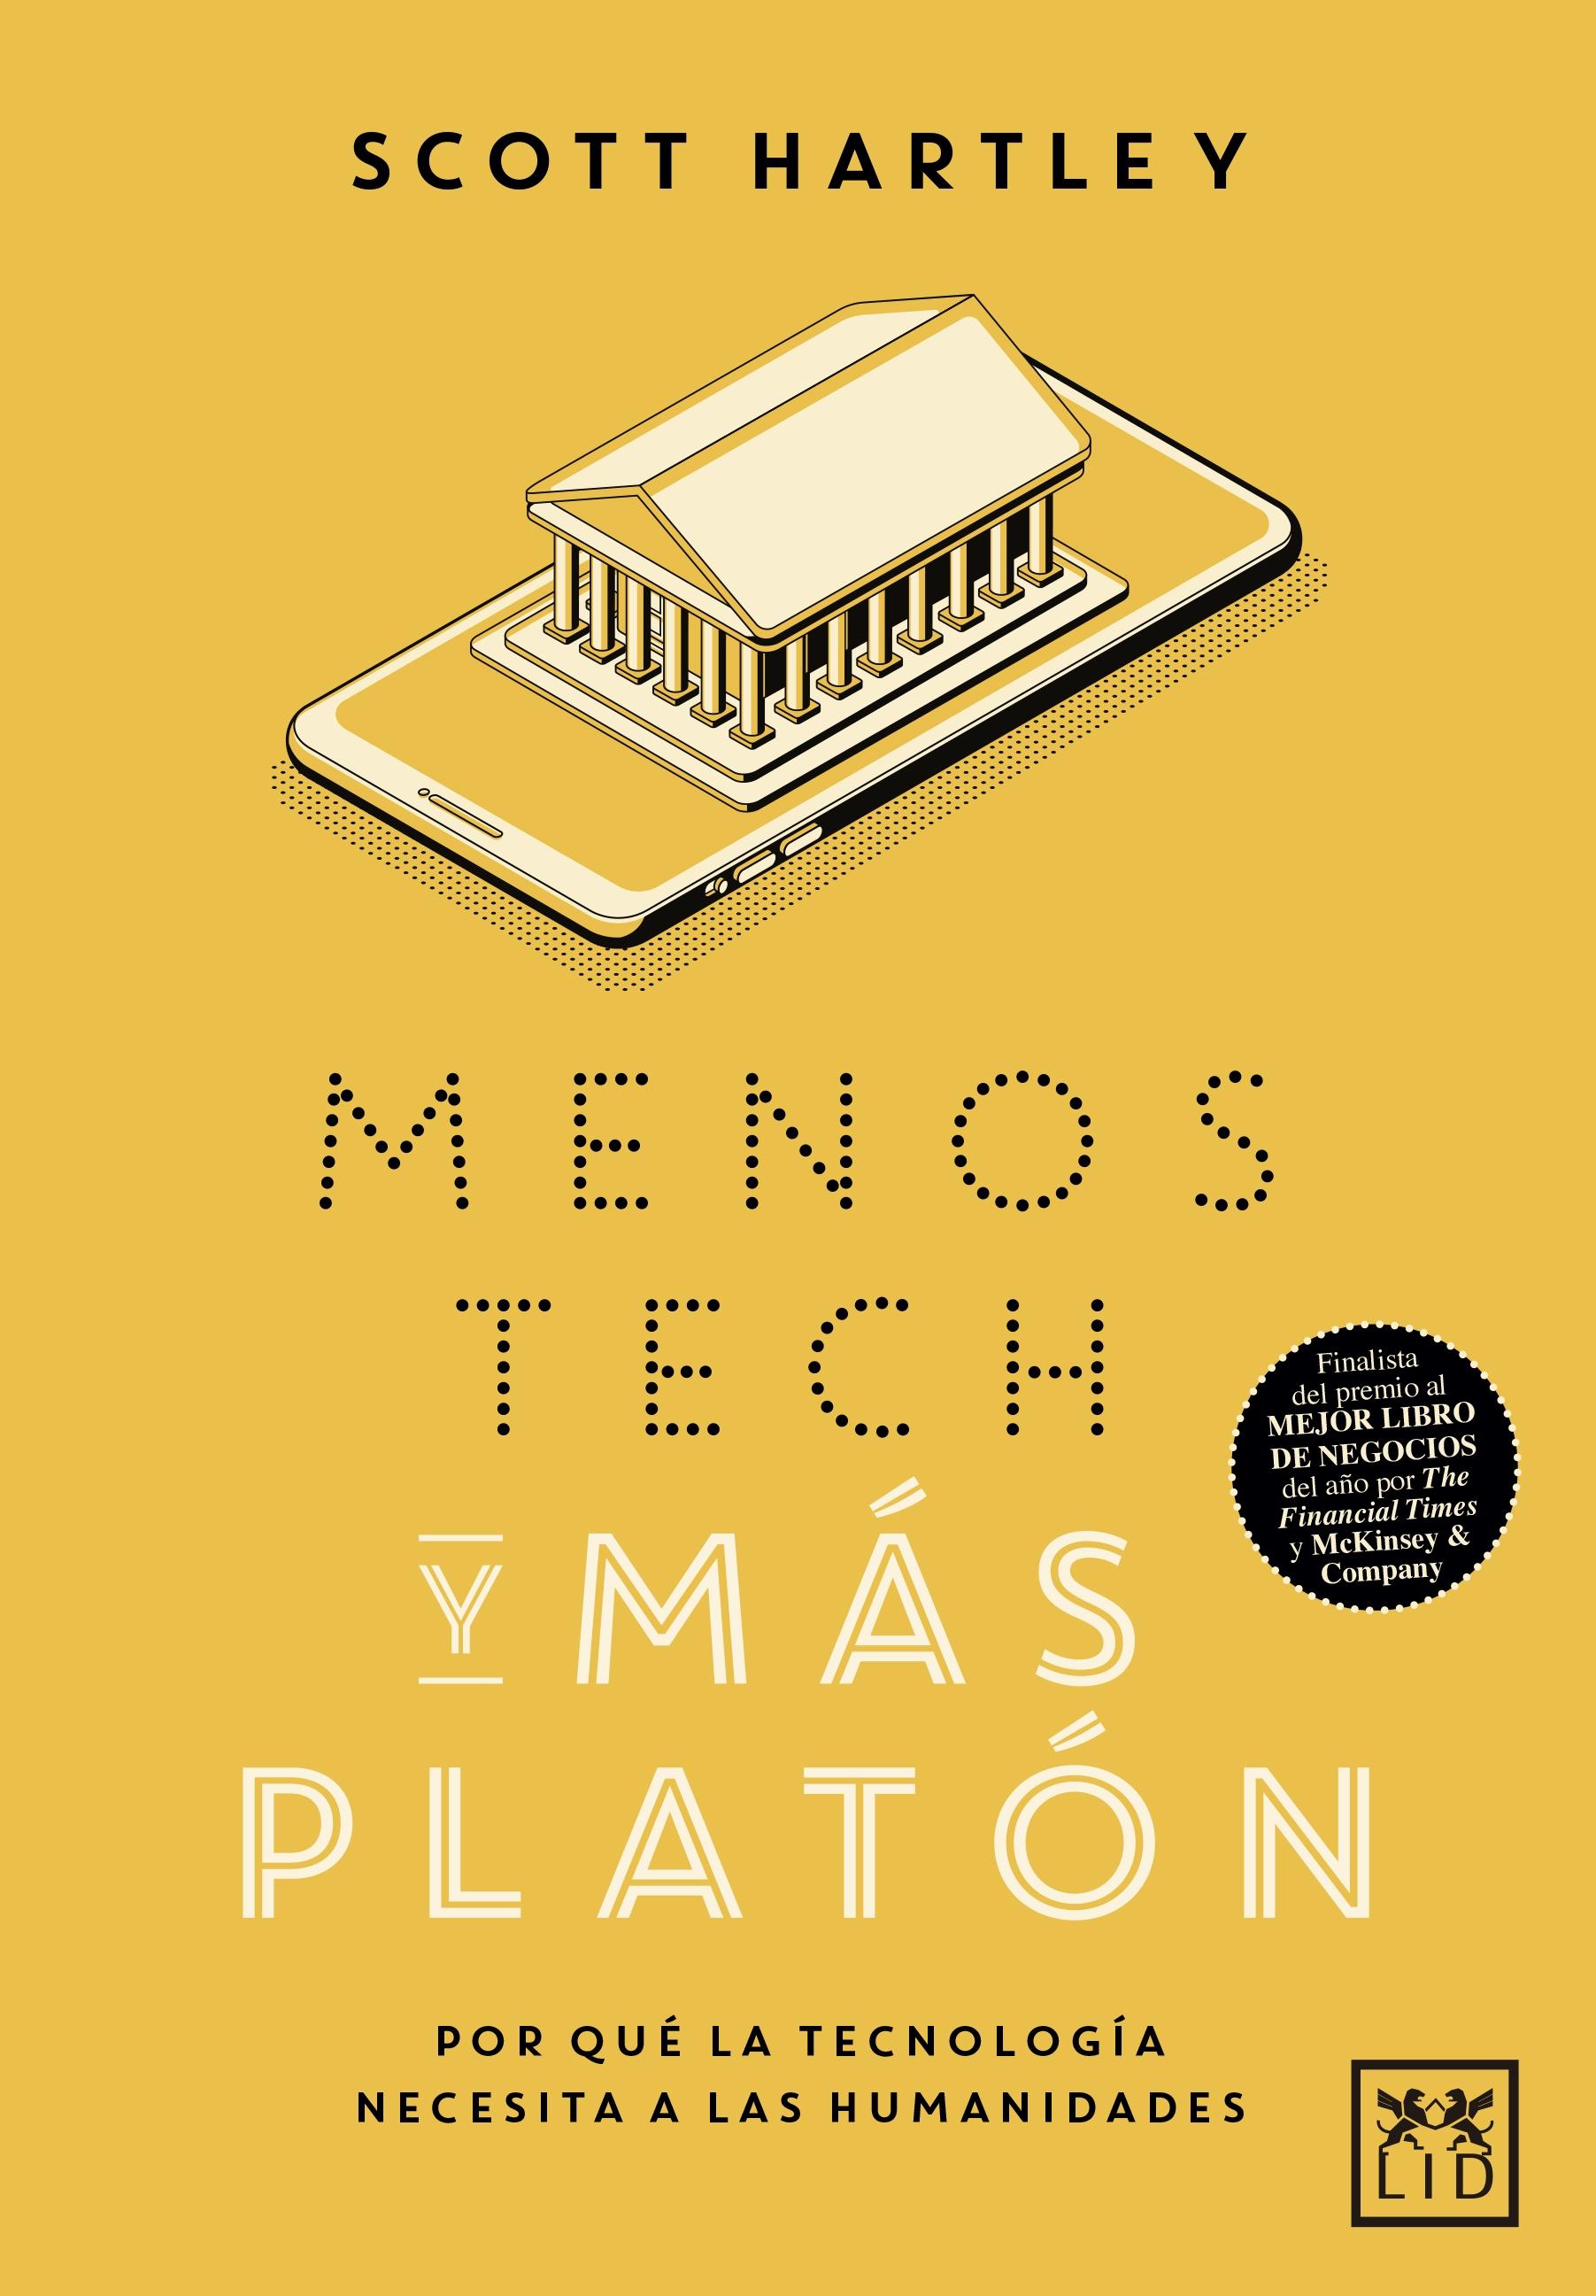 Menos Tech y más Platón "Por qué la tecnología necesita a las humanidades"